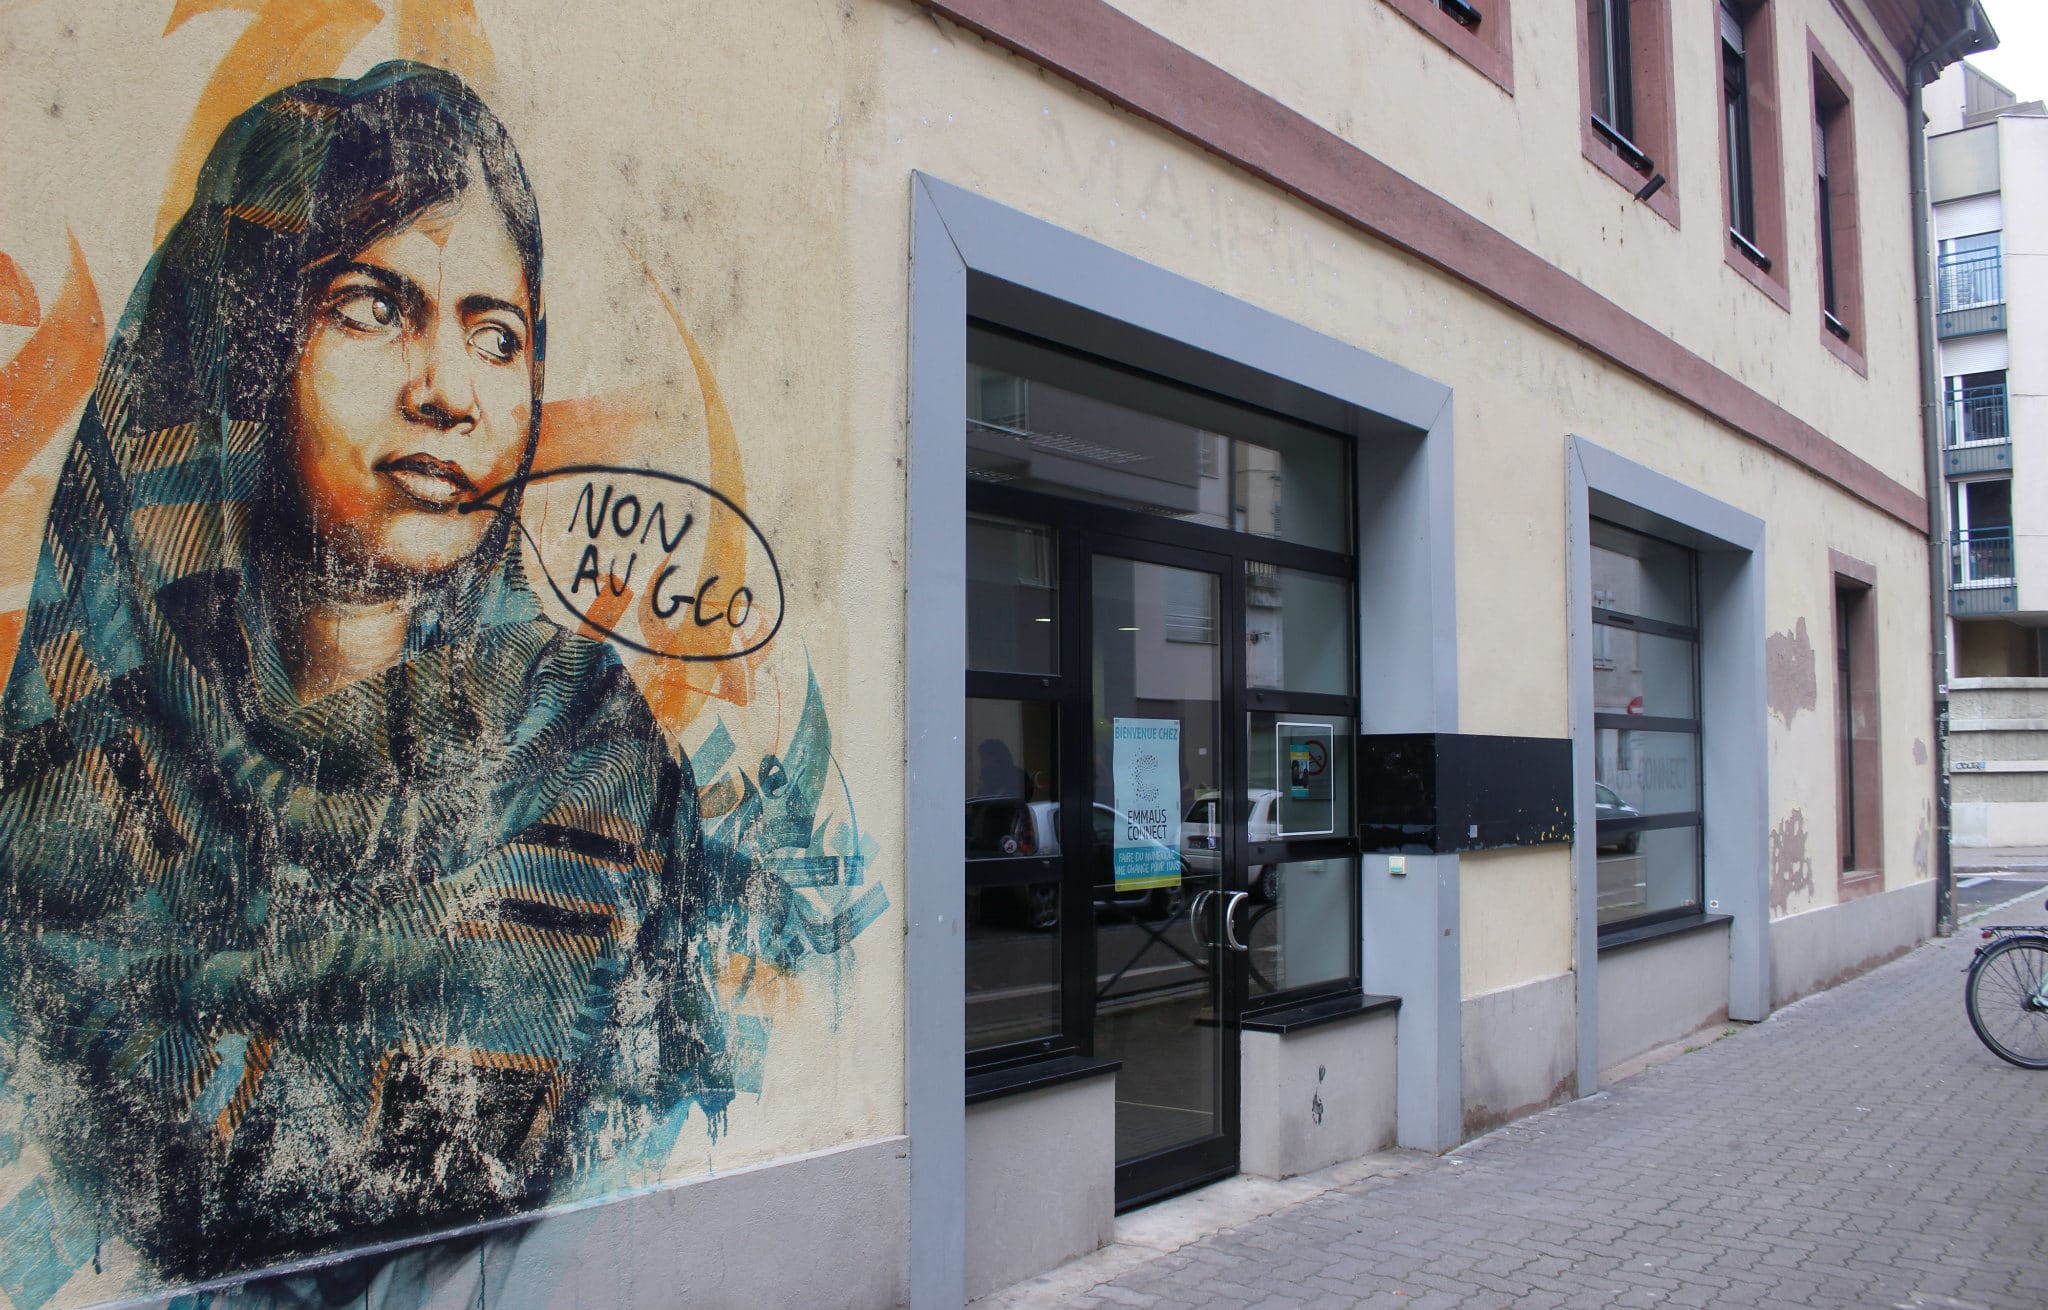 Les lettres de l'ancienne mairie de quartier sous le regard d'une fresque de Dan 23 représentant Malala (auquel un autre tag s'est ajouté) (photo JFG / Rue89 Strasbourg)